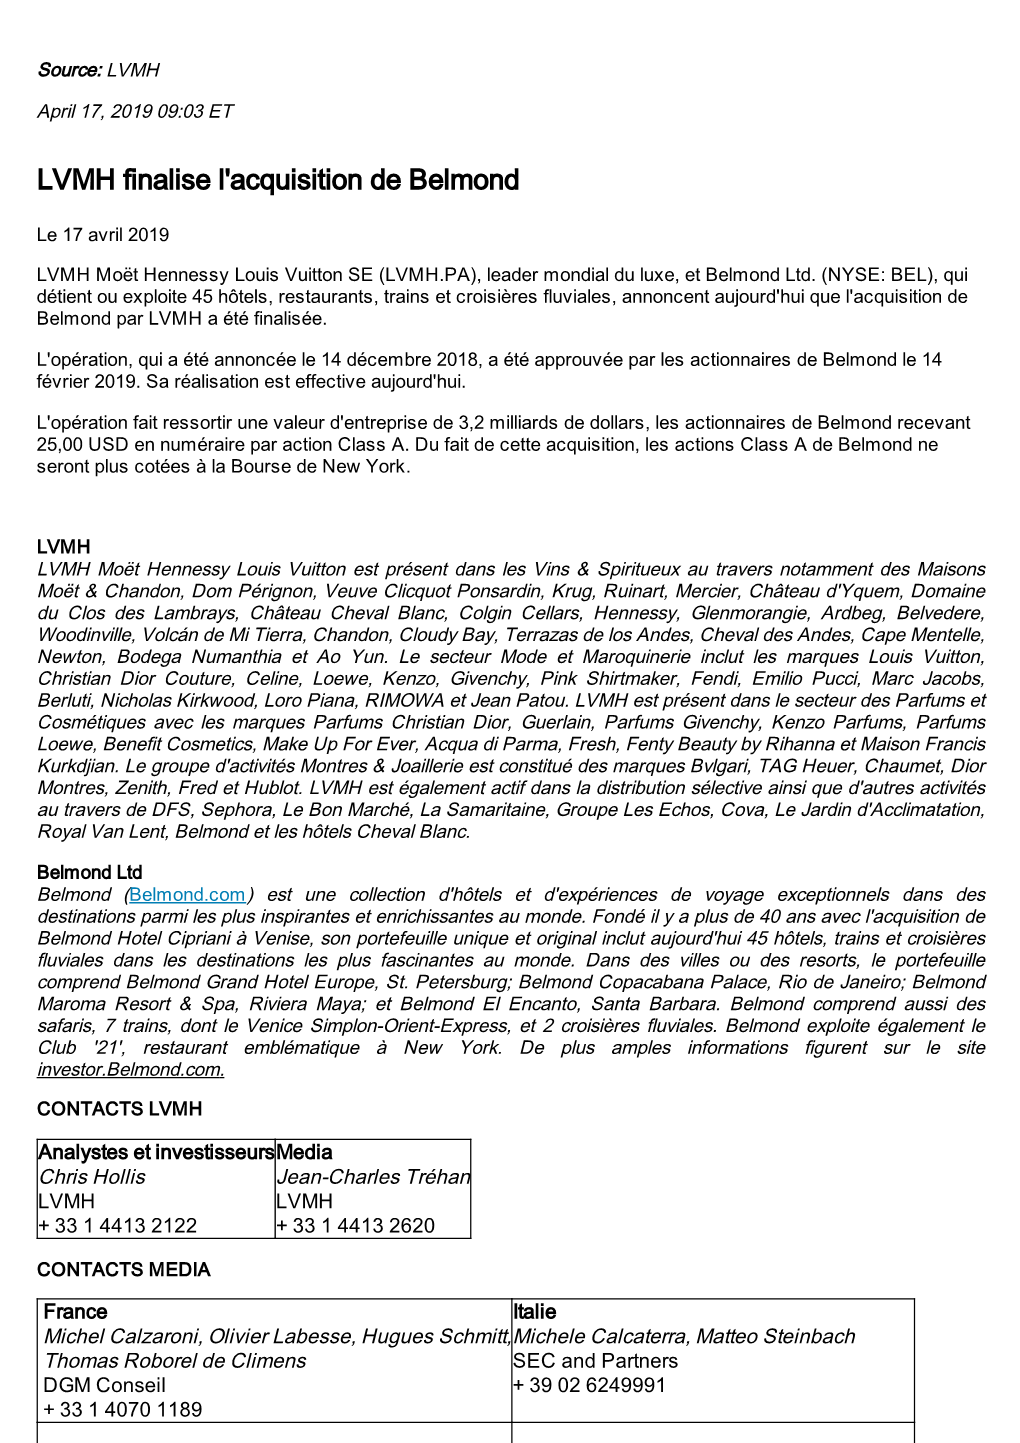 LVMH Finalise L'acquisition De Belmond